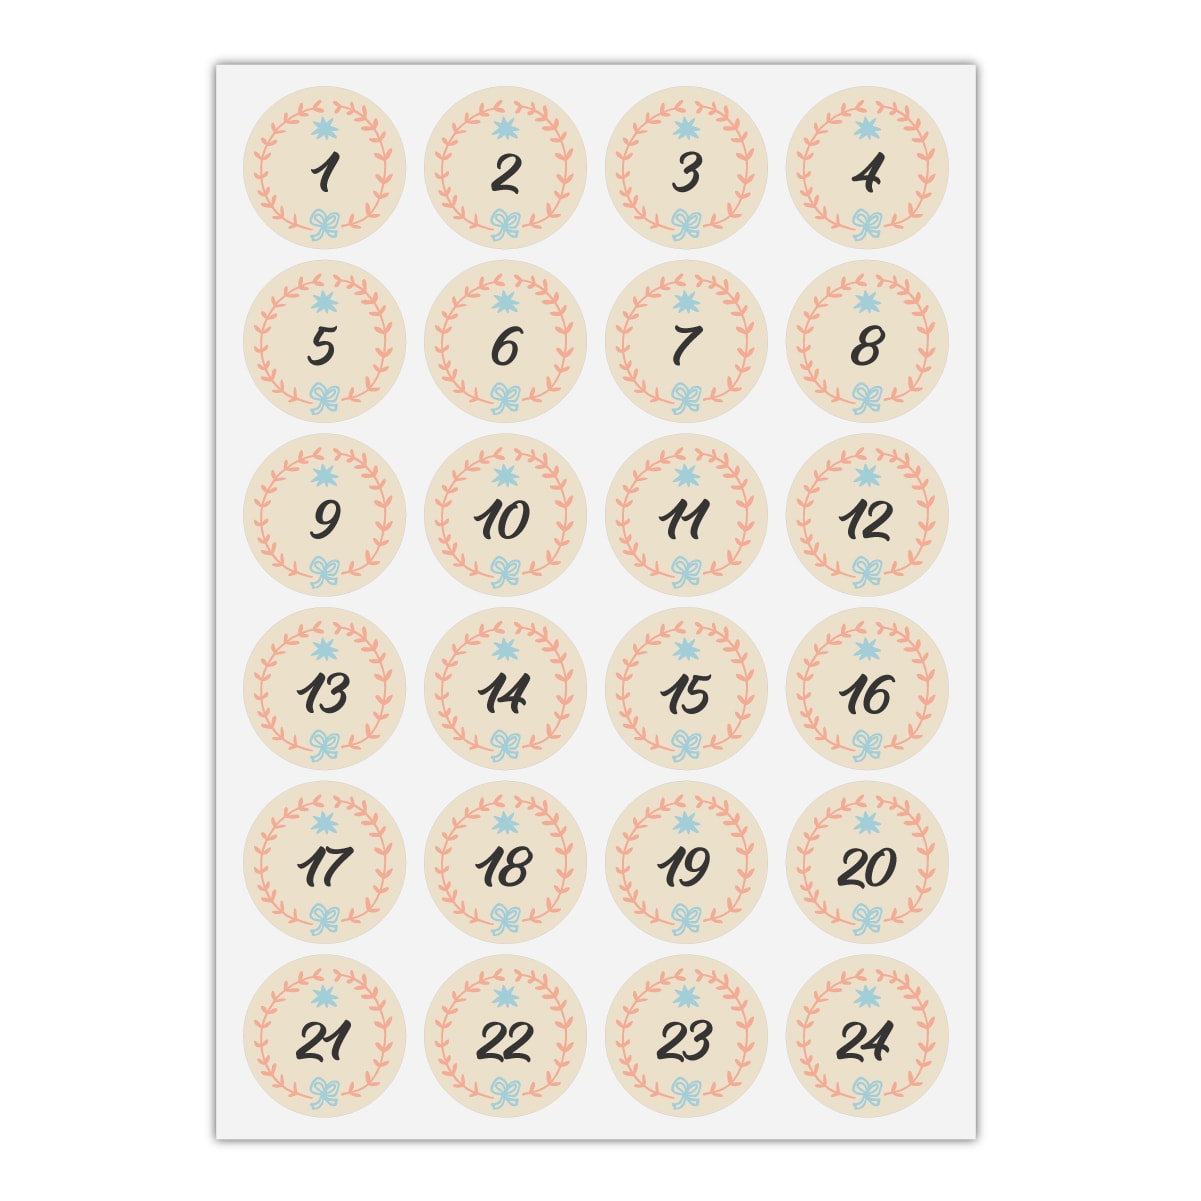 Kartenkaufrausch Sticker in beige: 24 hübsche Advents Aufkleber